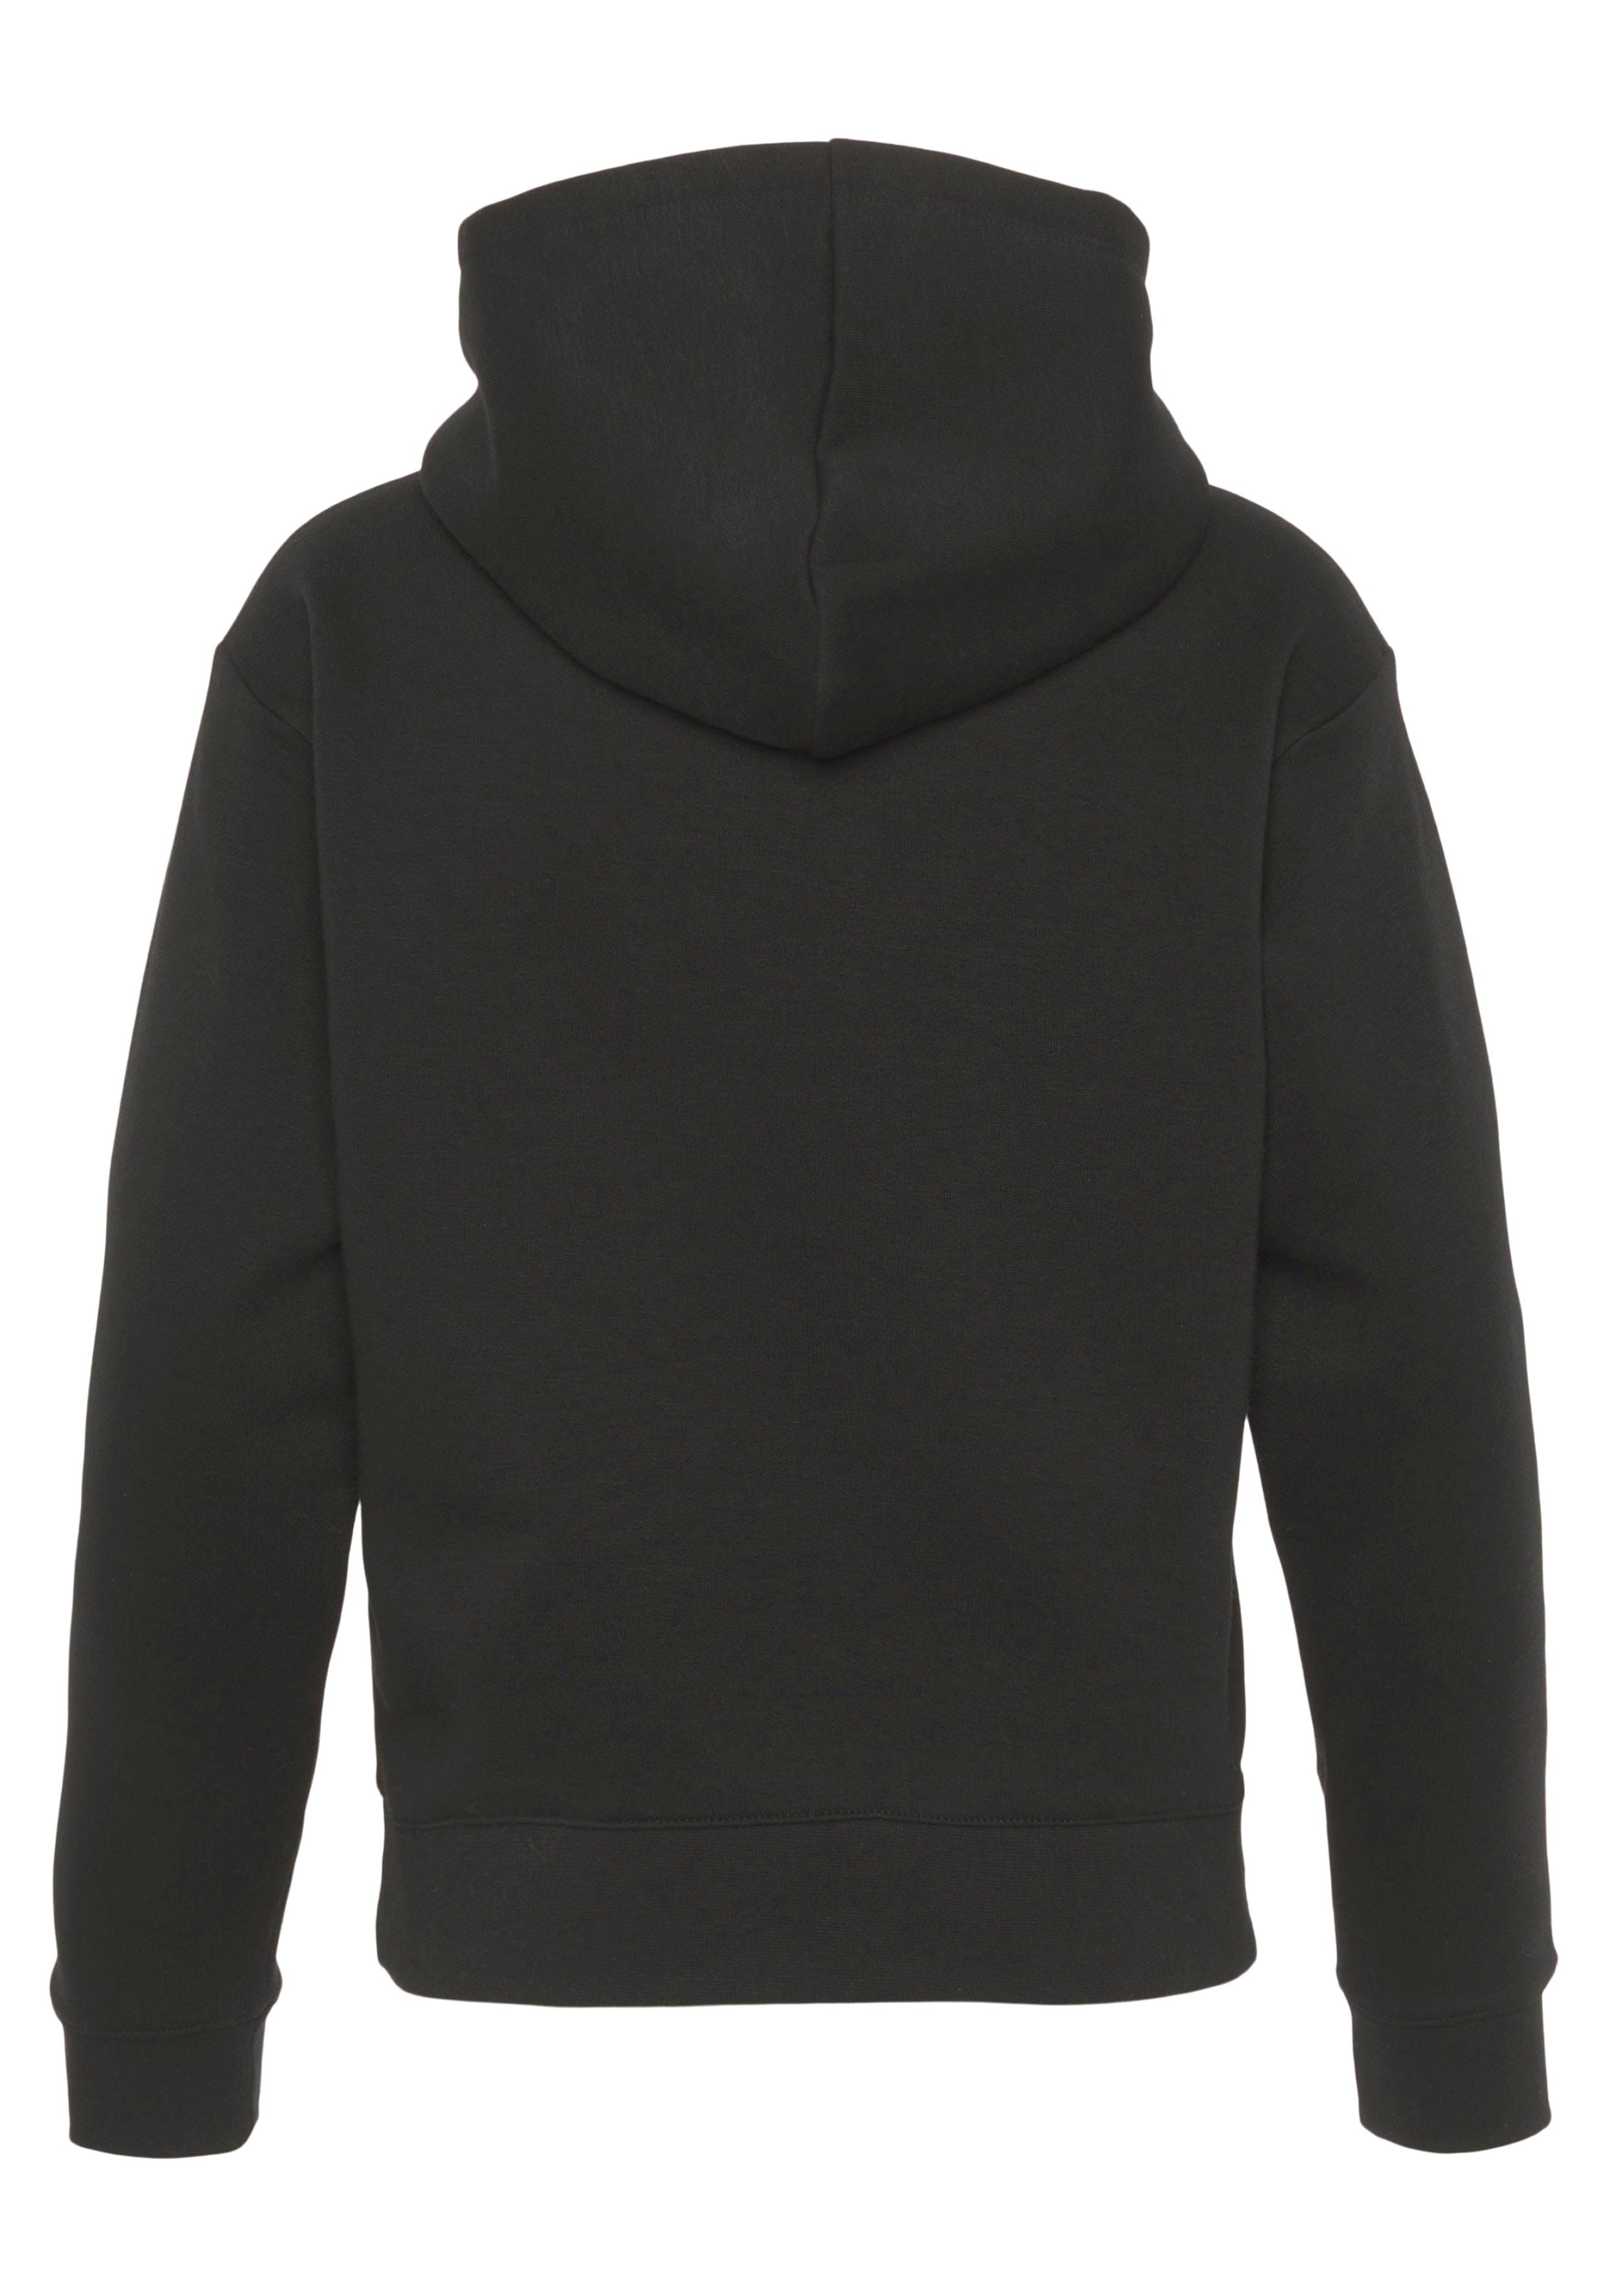 für black - Kapuzensweatshirt Sweatshirt Champion Hooded Basic Kinder